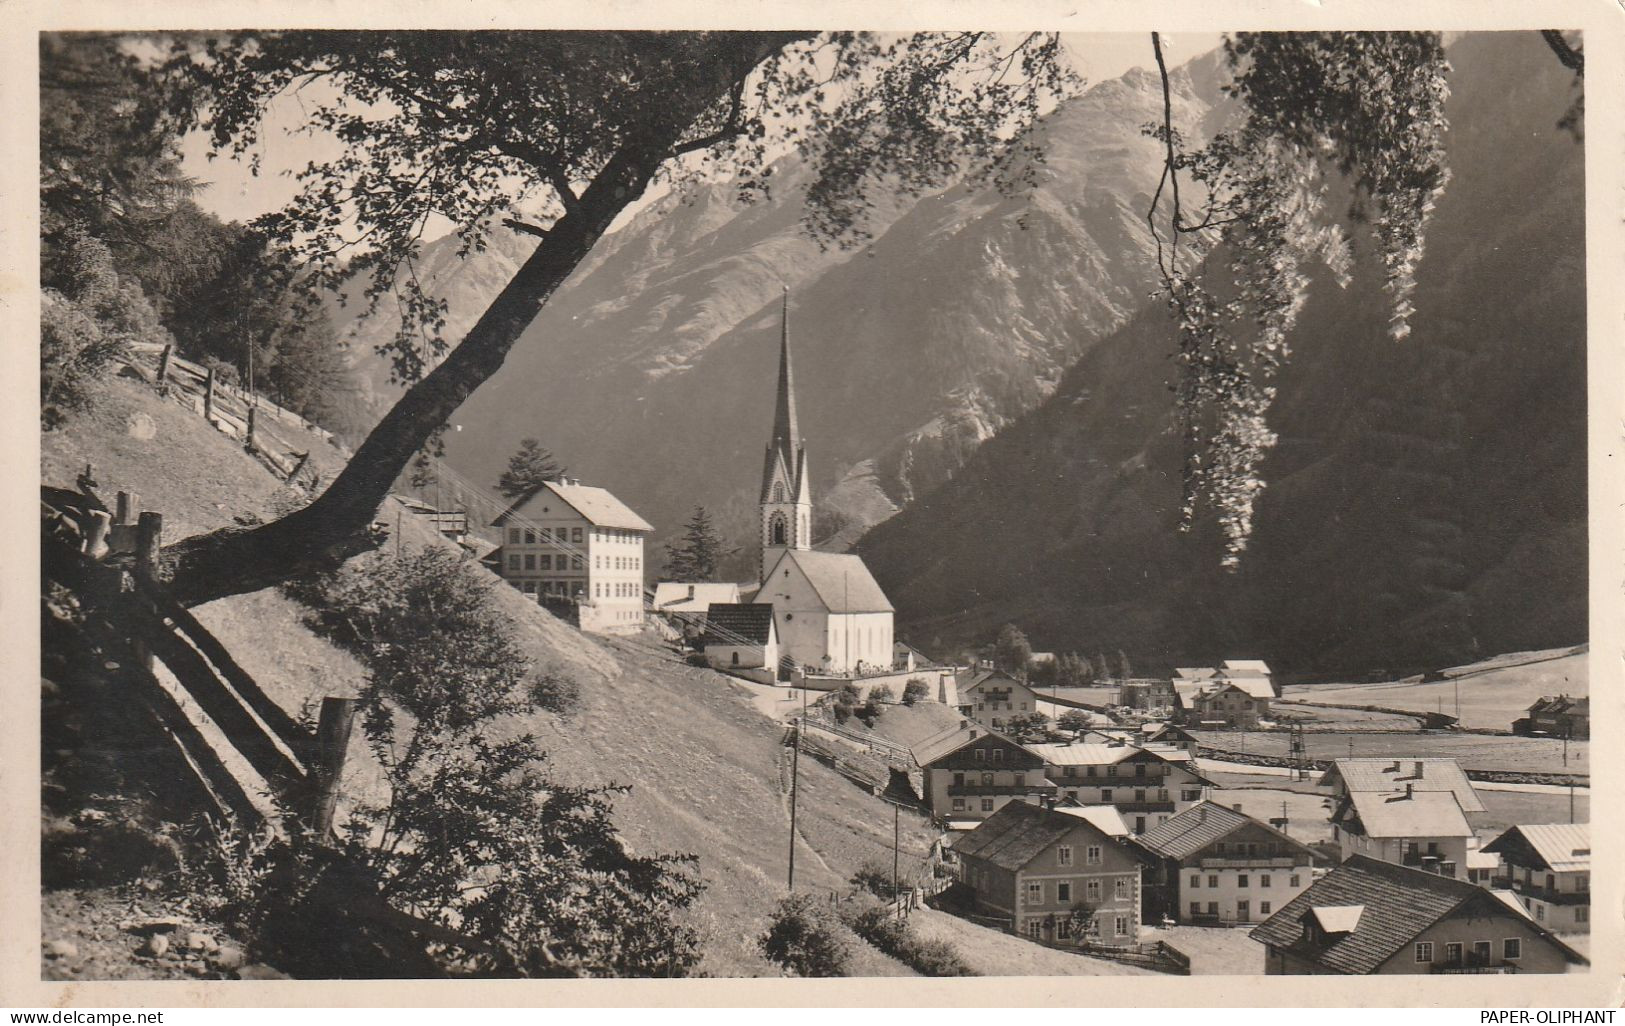 A 6450 SÖLDEN, Blick über Den Ort, 1956 - Sölden